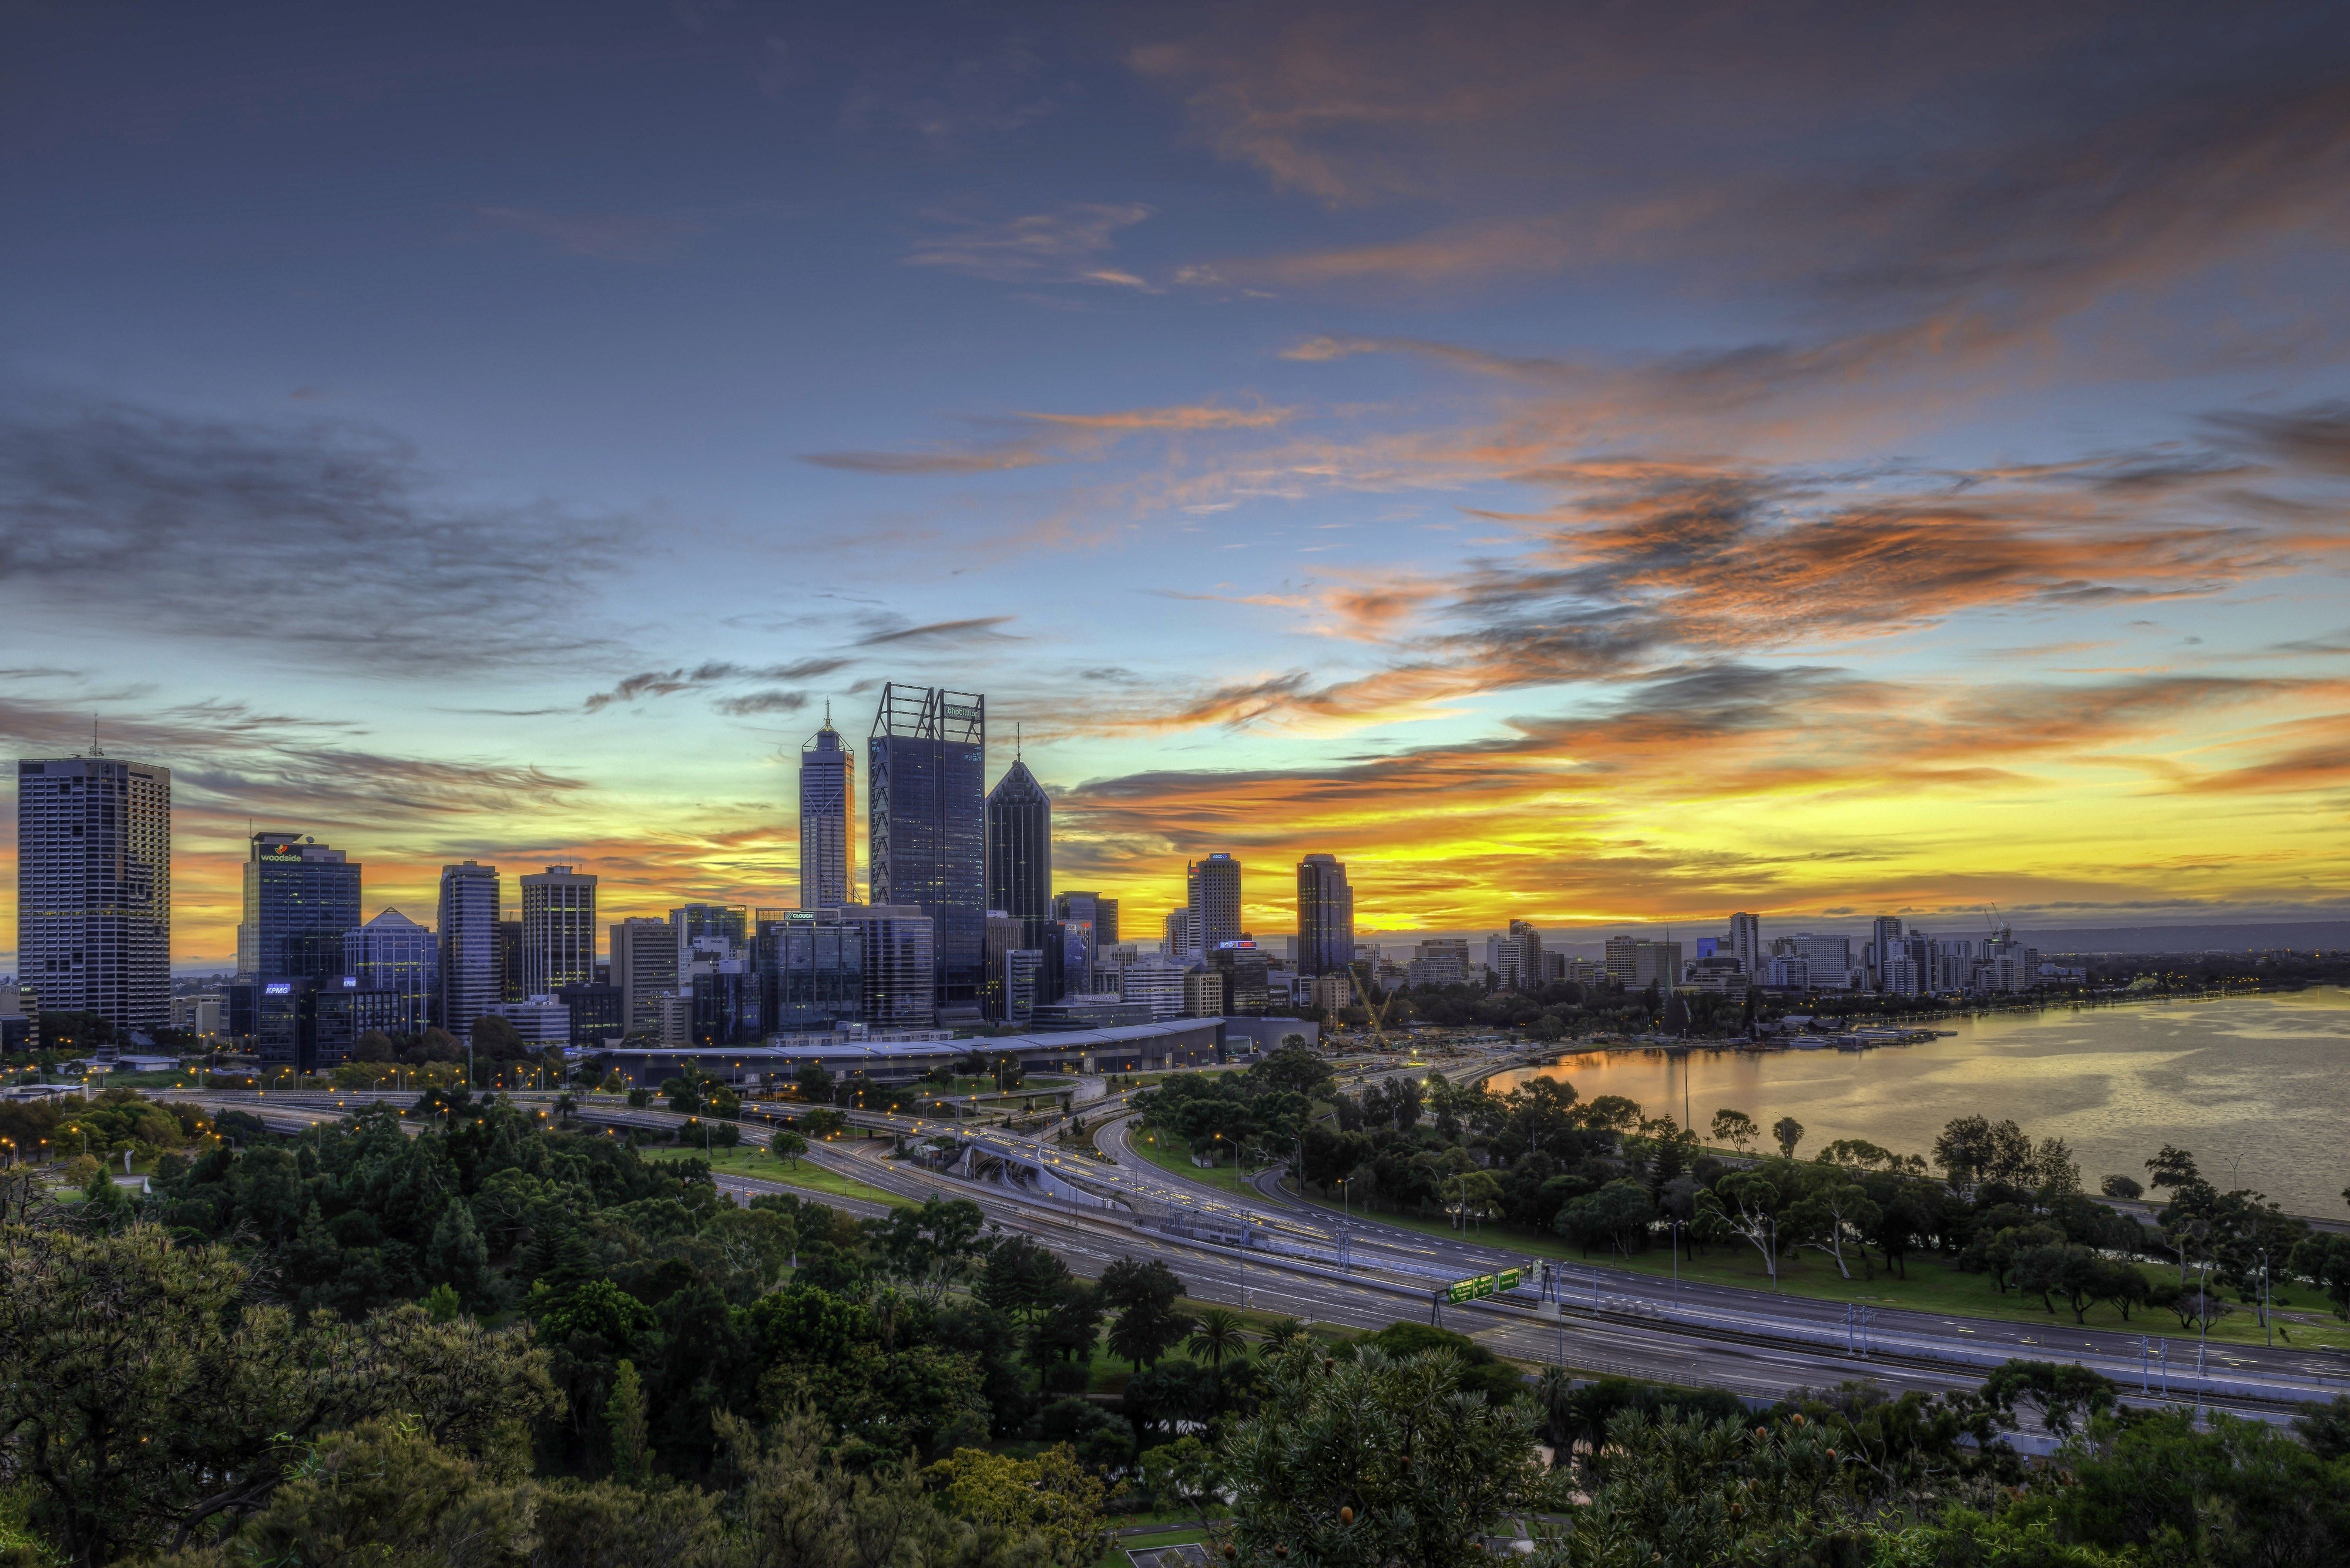 General 4000x2669 city cityscape Australia Perth sunlight